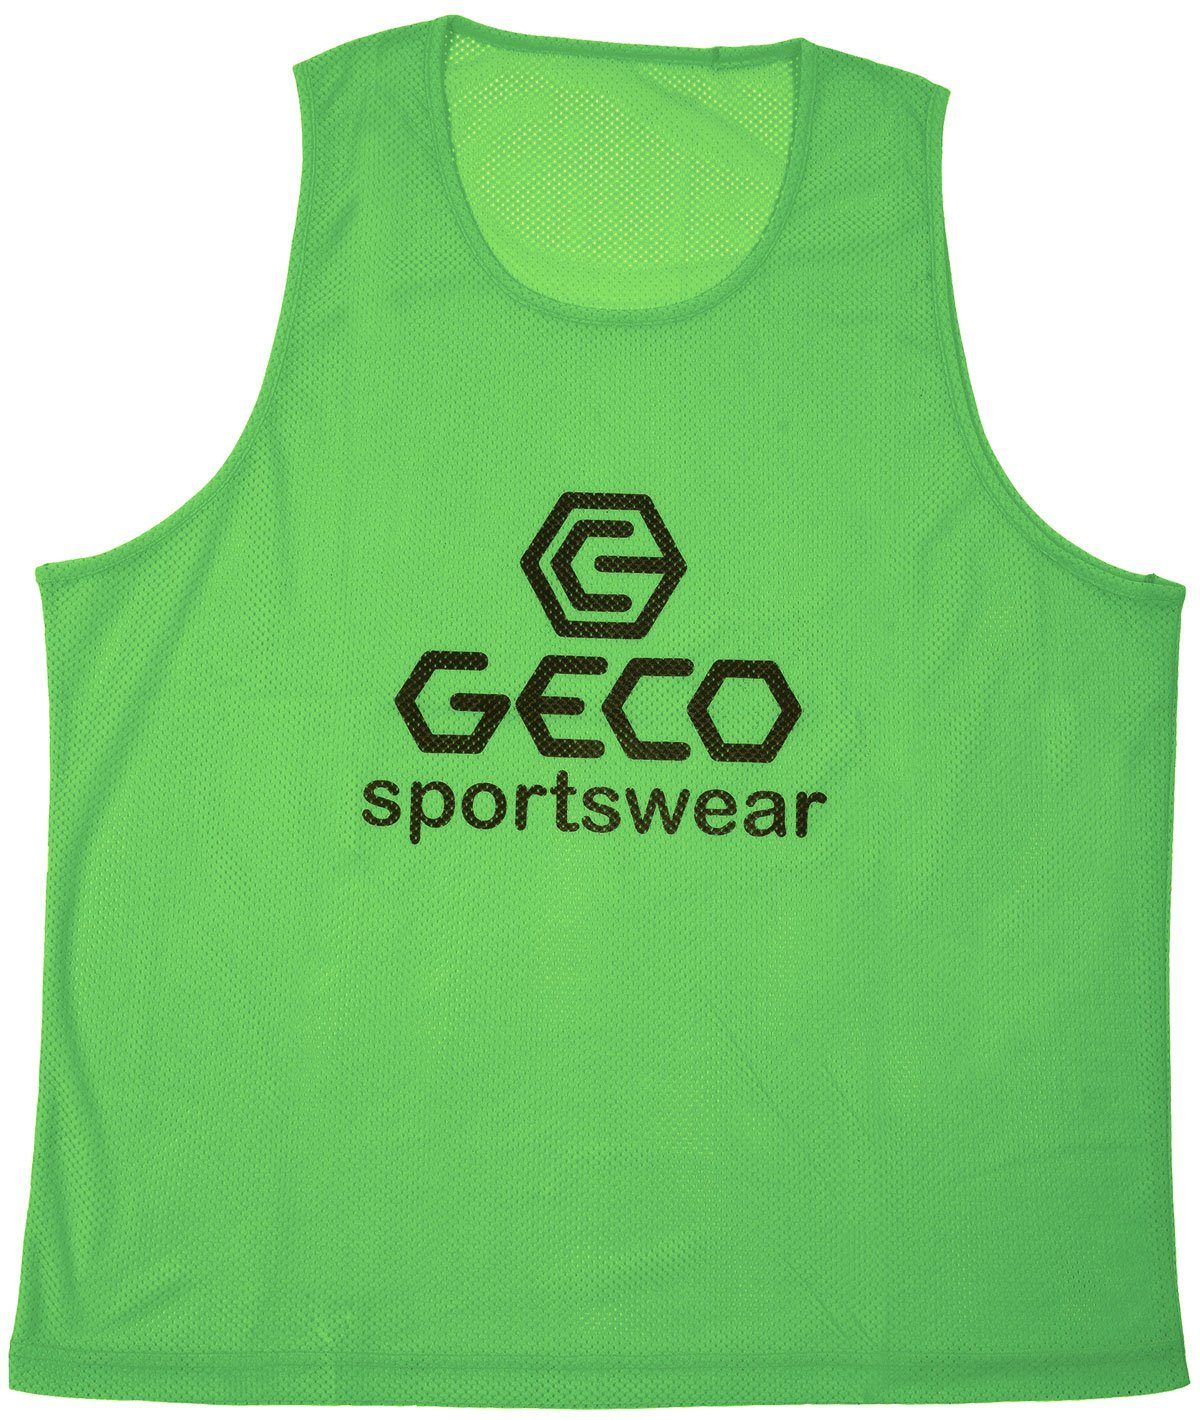 Geco Sportswear Trainingsleibchen Geco Trainingsleibchen Neon Farben Markierungshemdchen Neon grün